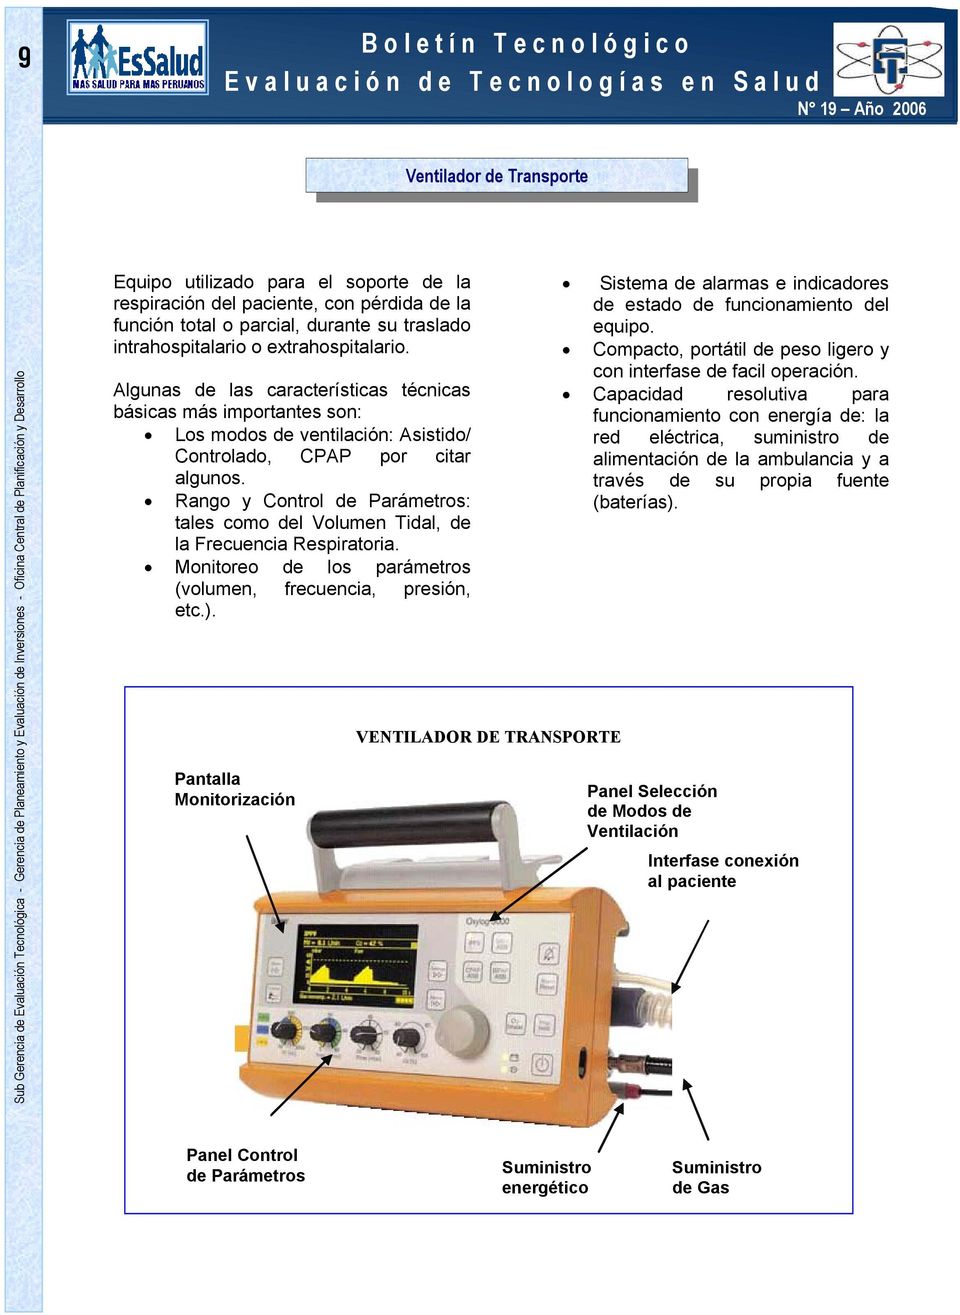 Rango y Control de Parámetros: tales como del Volumen Tidal, de la Frecuencia Respiratoria. Monitoreo de los parámetros (volumen, frecuencia, presión, etc.).